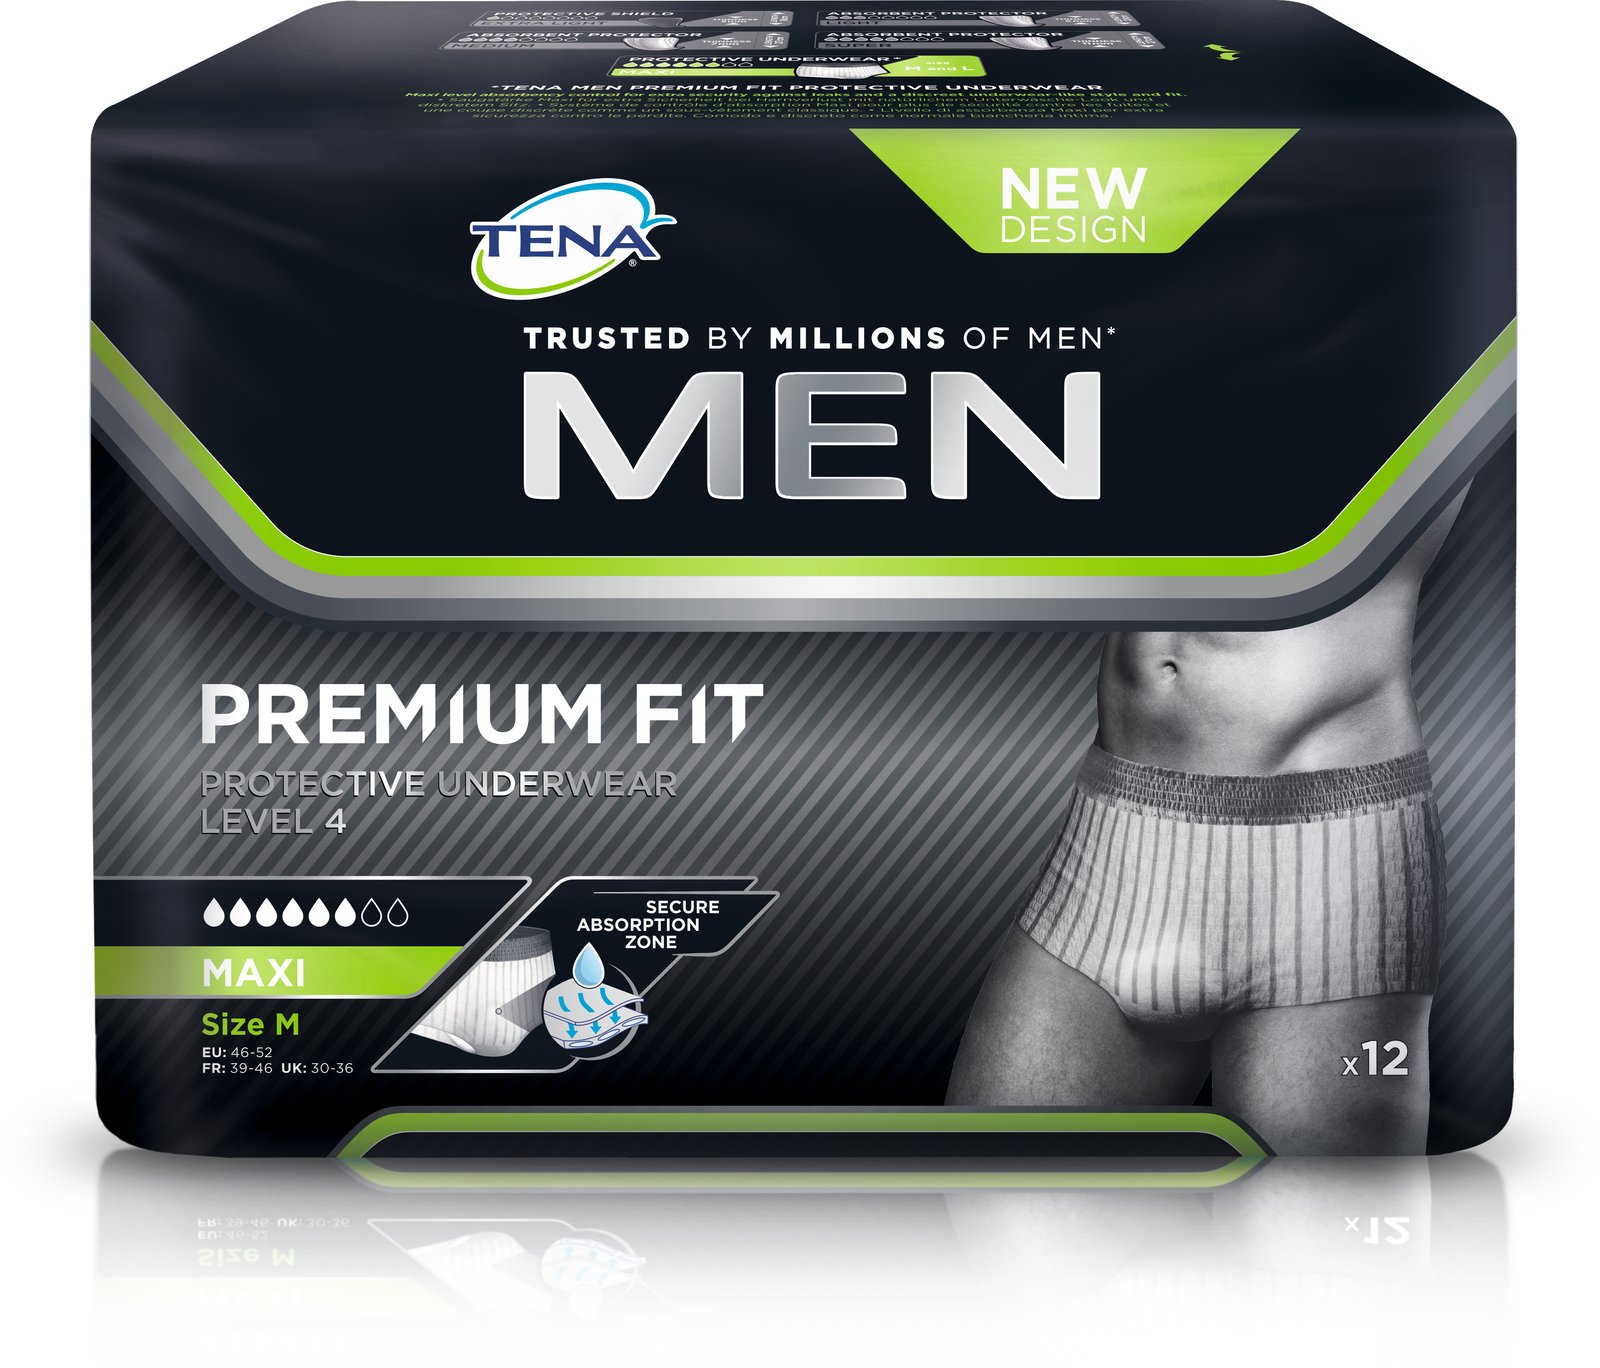 TENA Men premium inkontinensskydd Medium 12 st